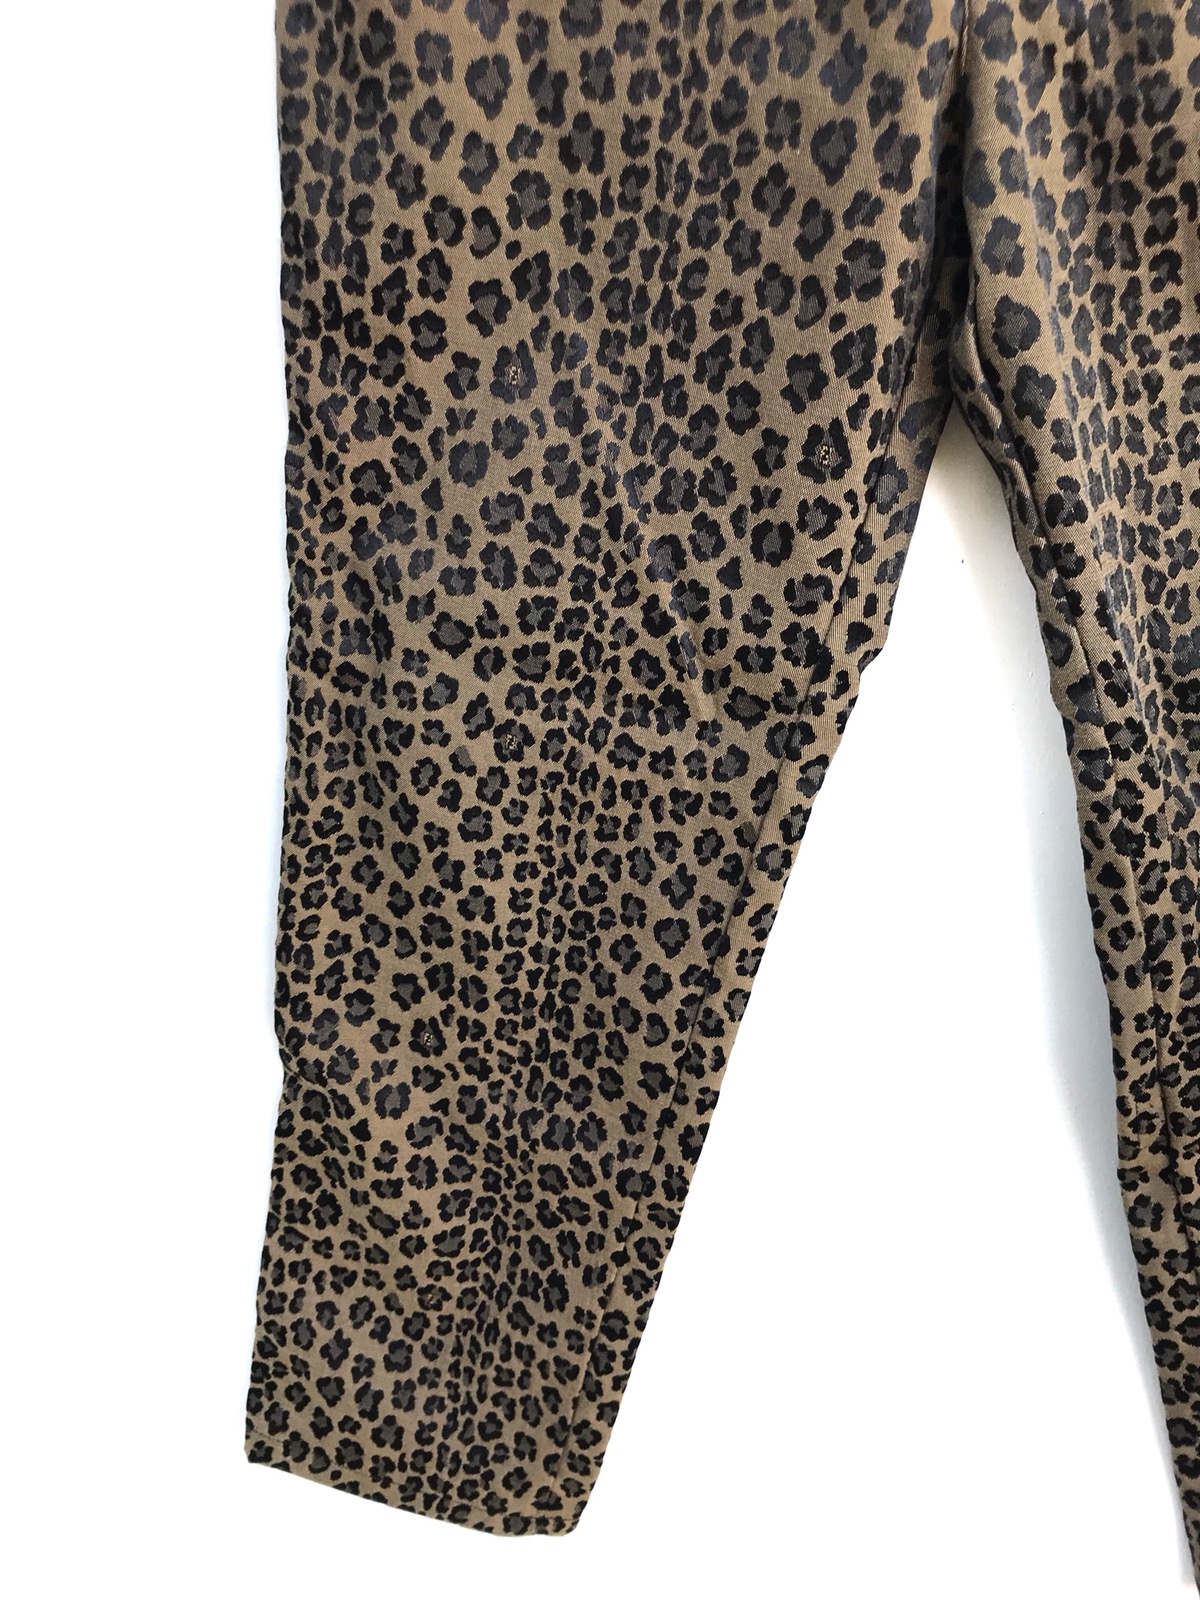 Authentic Fendi Leopard Print Trousers Pants - 8